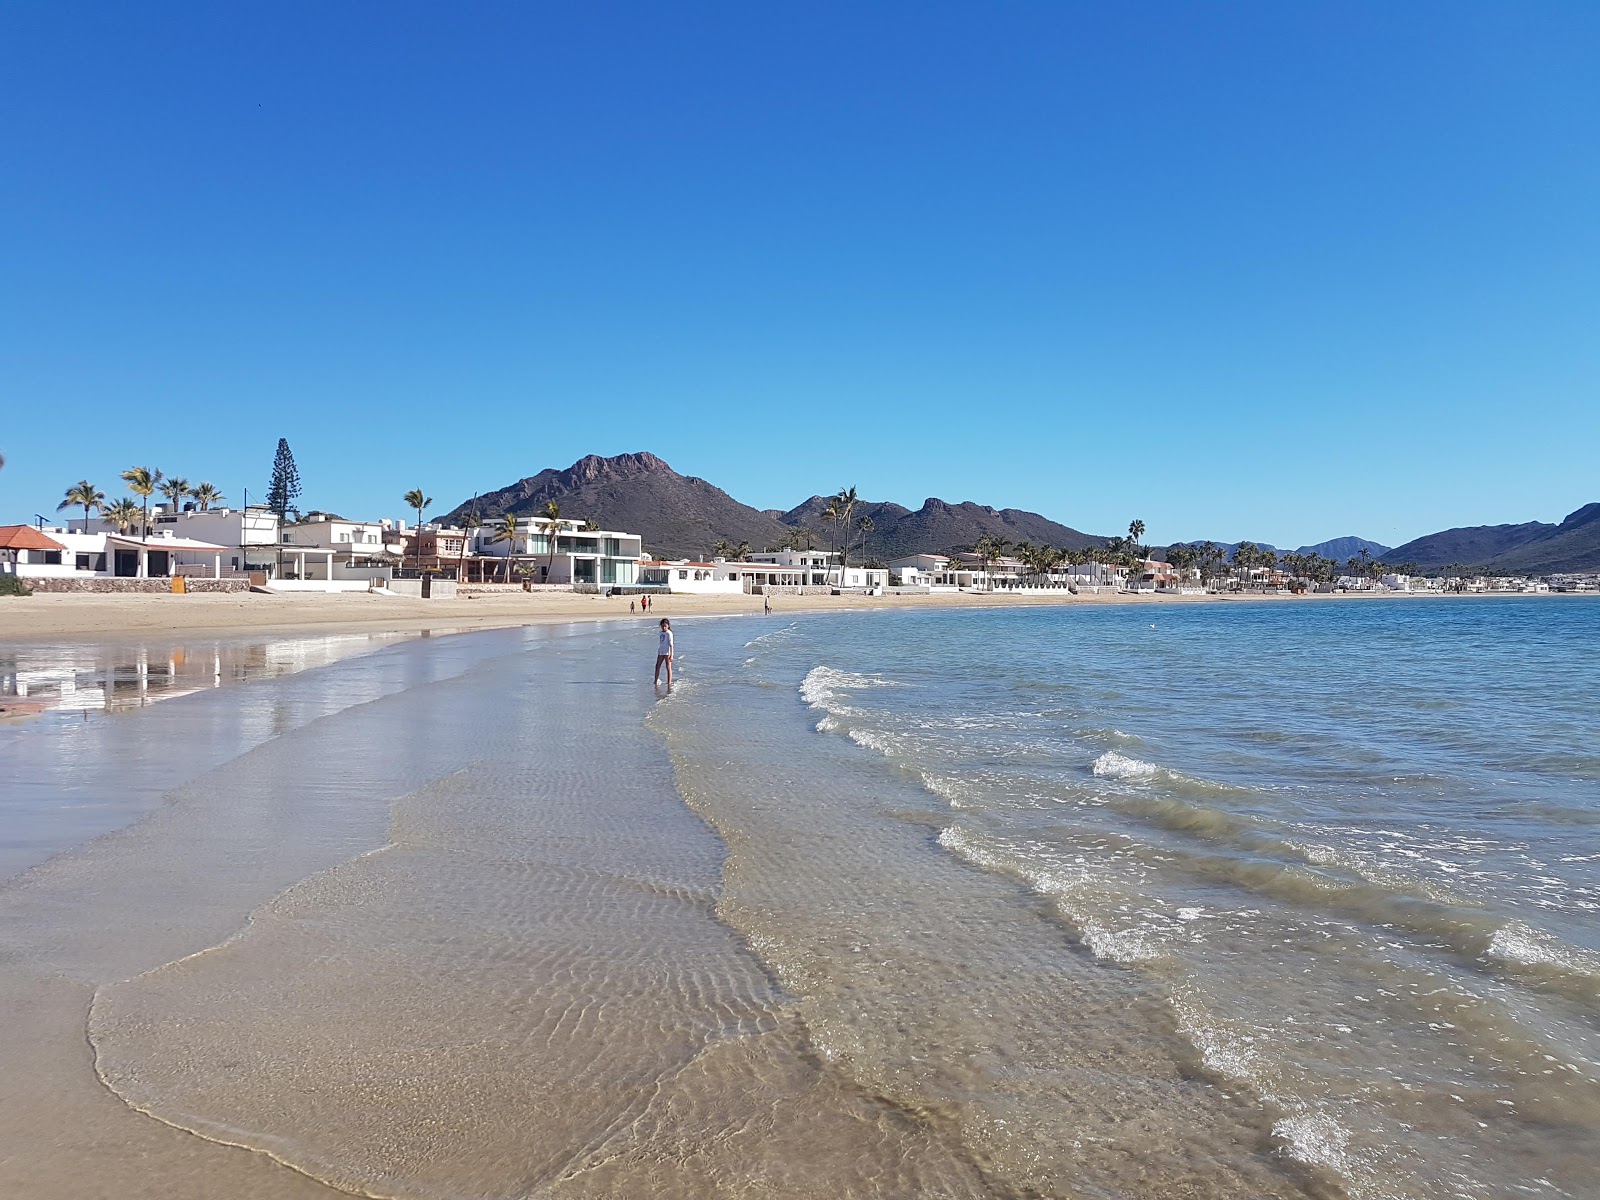 Miramar beach'in fotoğrafı parlak kum yüzey ile